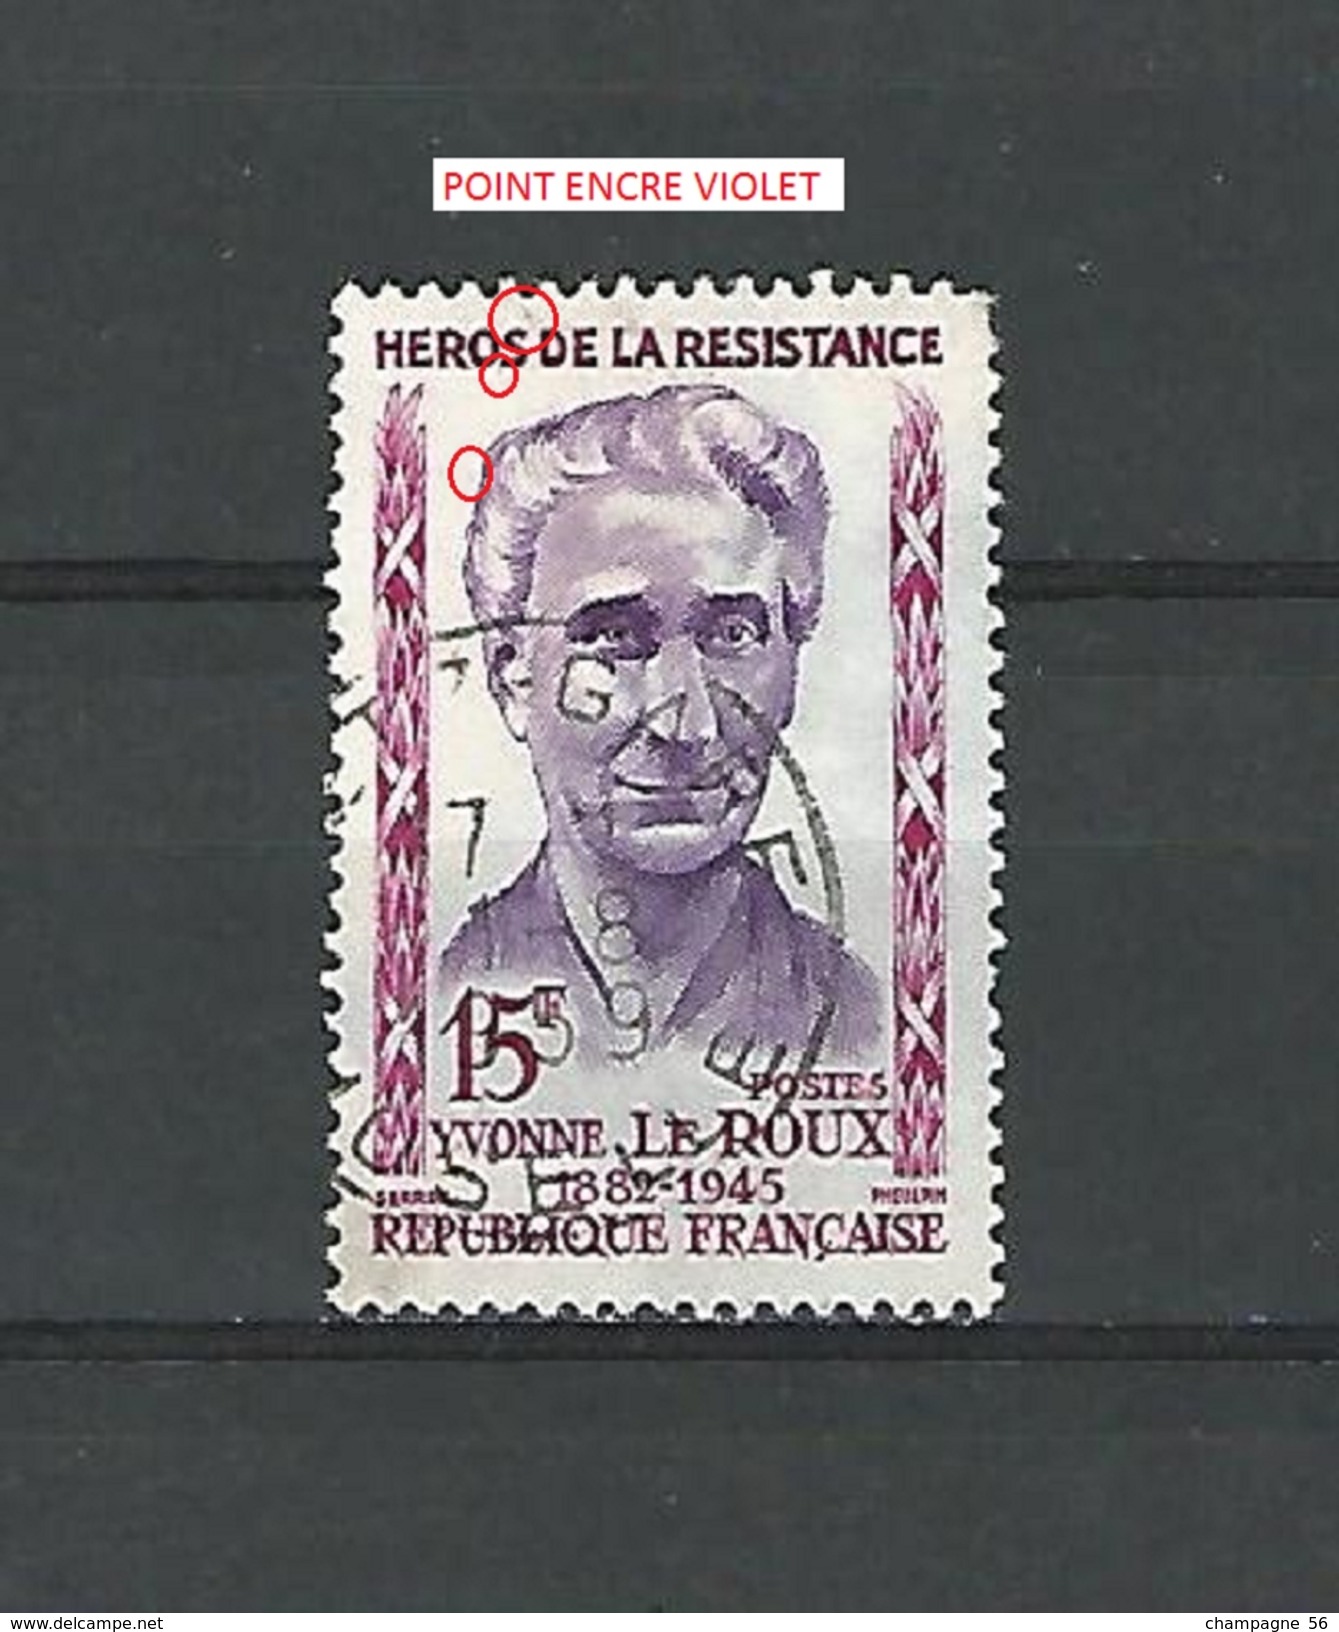 VARIÉTÉS FRANCE 1959  N° 1199  HÉROS RÉSISTANCE YVONNE LE ROUX  OBLITÉRÉ DOS  CHARNIÈRE 1.8.1959 - Used Stamps